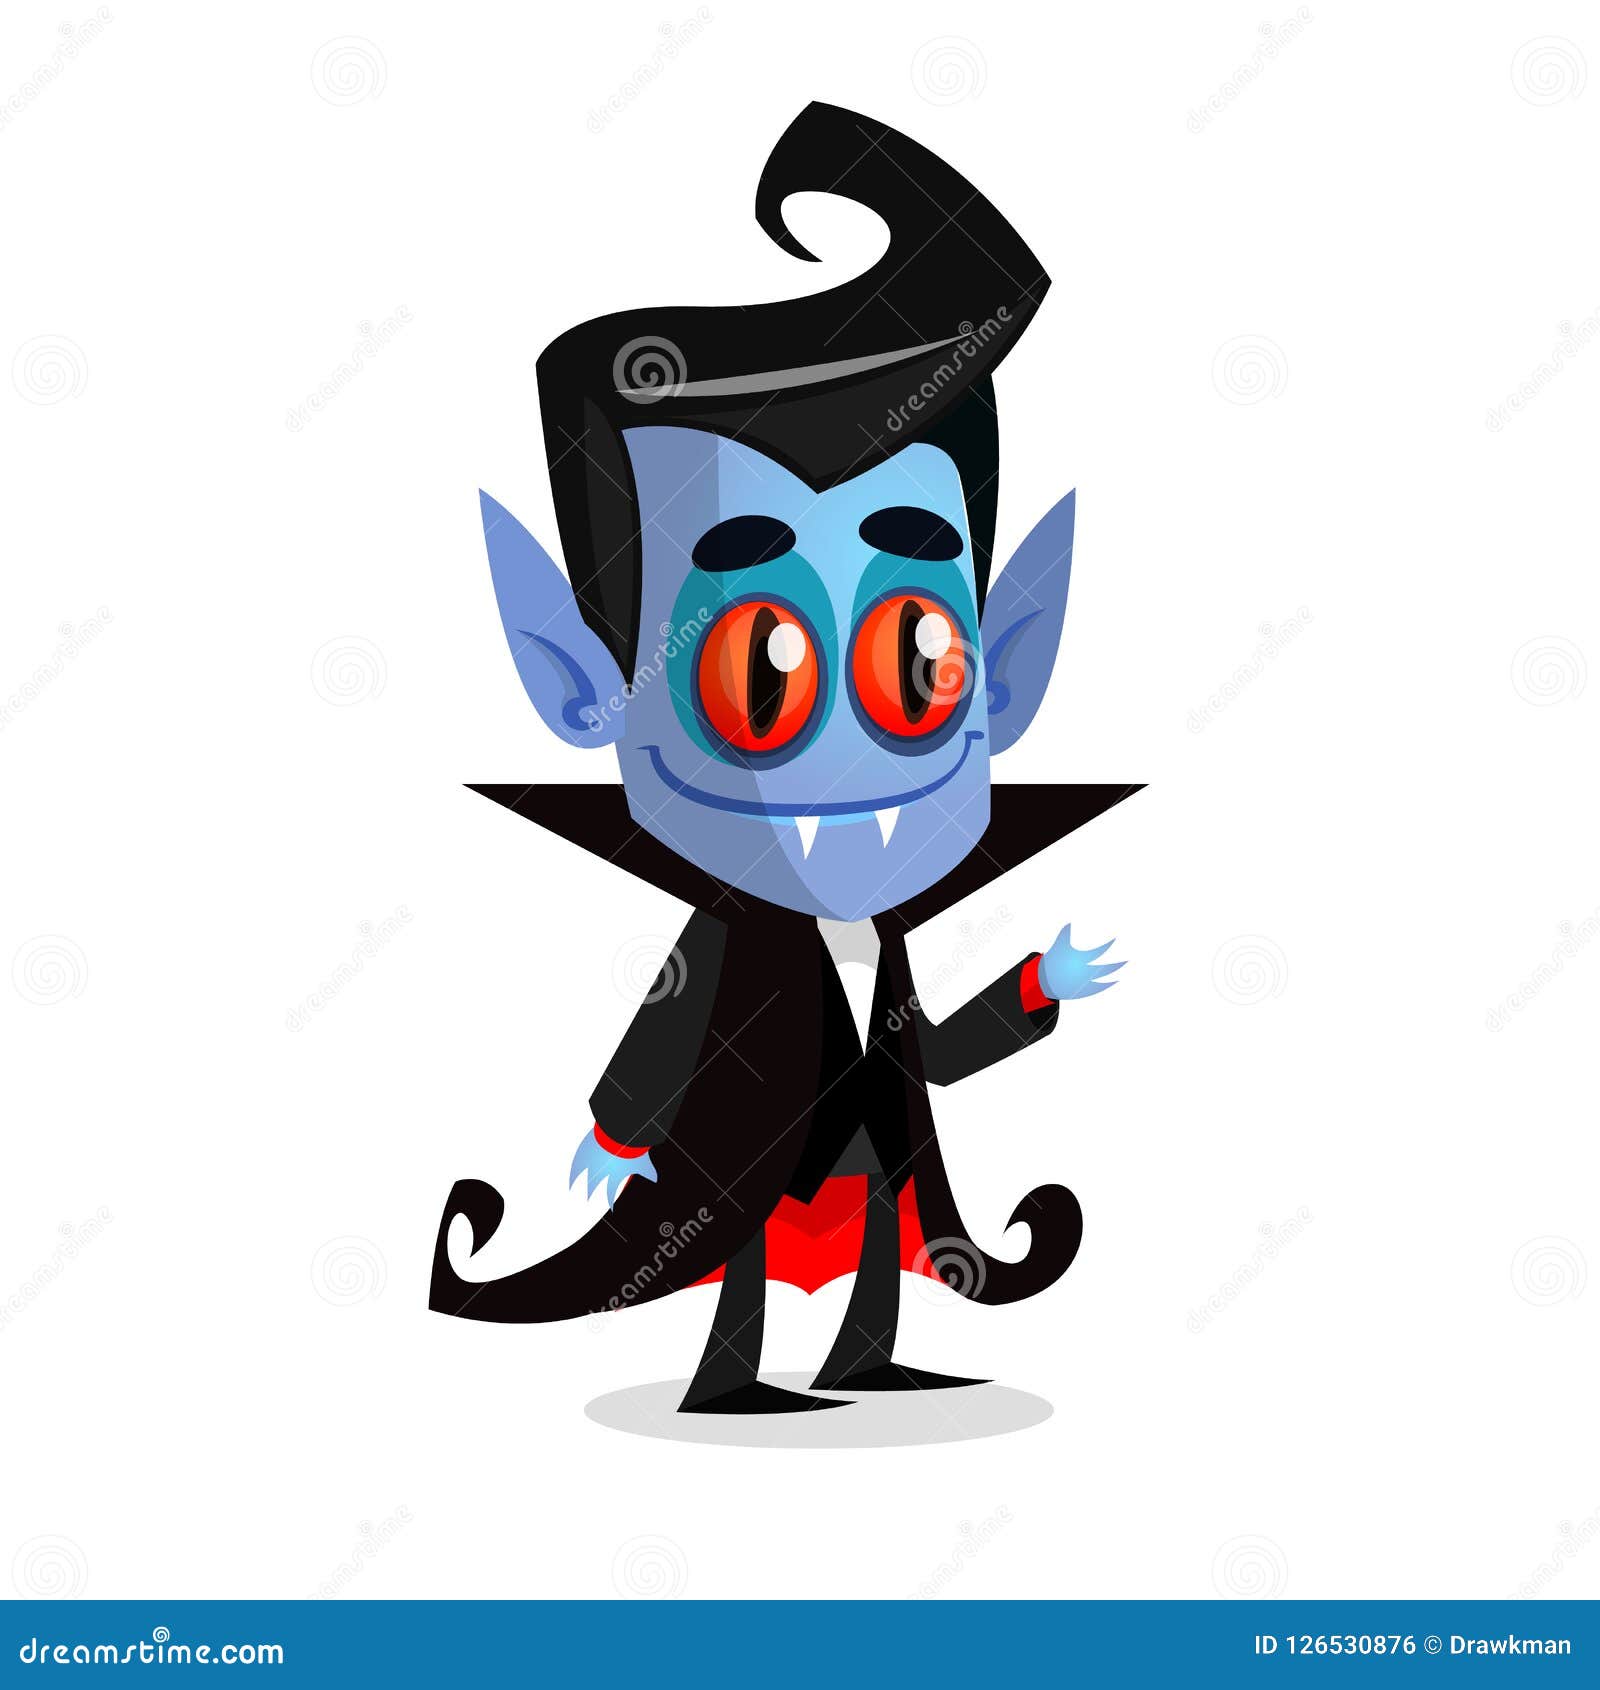 Assustador Vampiro Drácula Manto Preto Com Olhos Vermelhos Desenho Animado  imagem vetorial de forden© 406039746